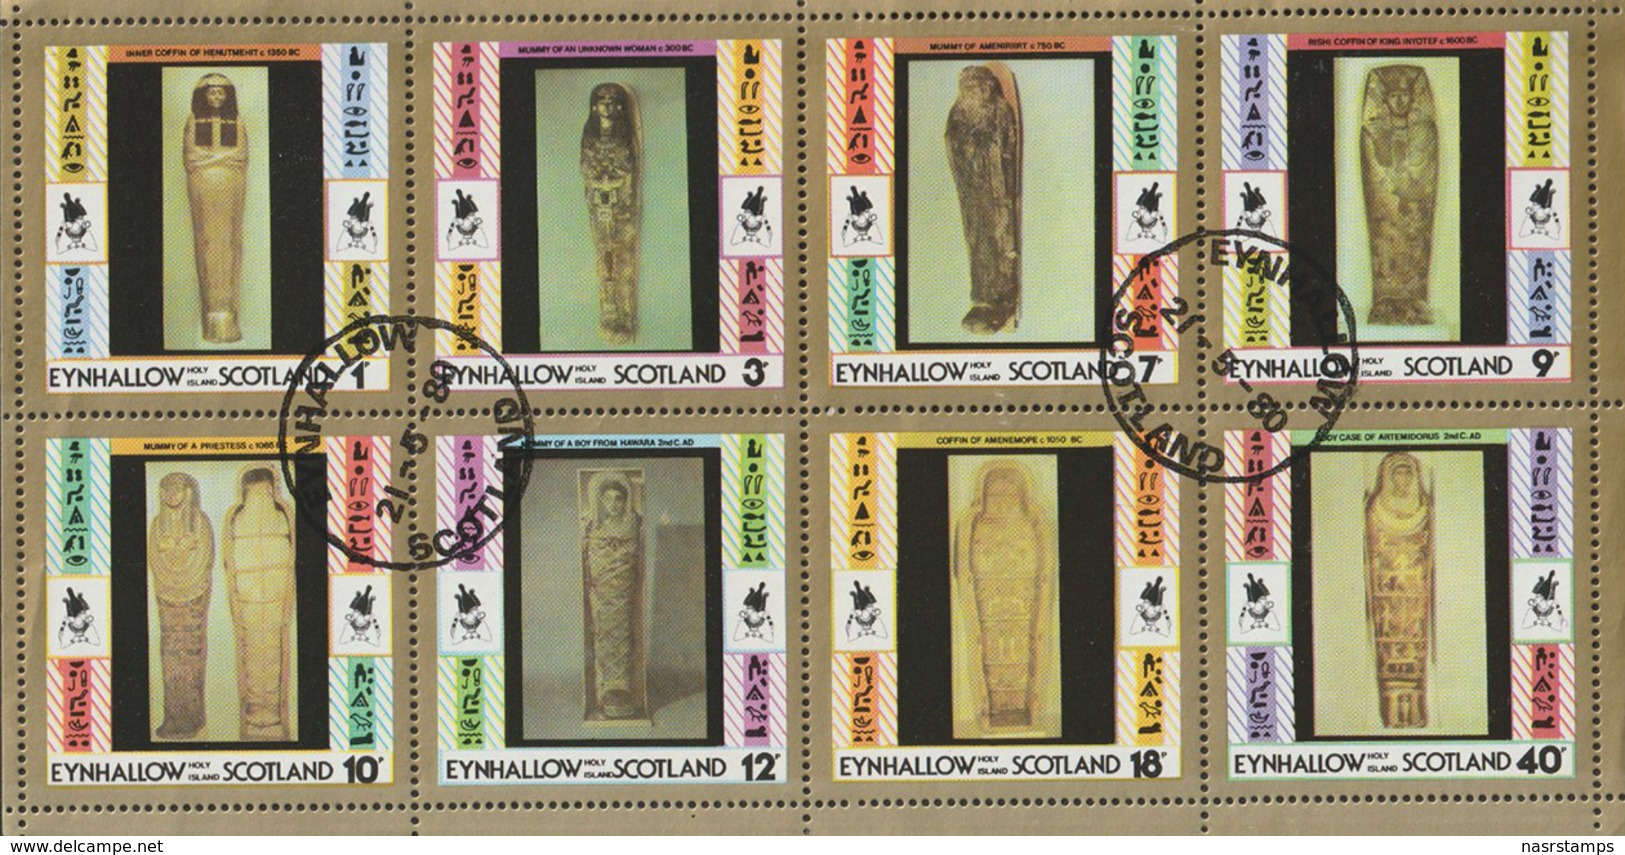 Egyptology - Labels - ( Complete Sheet - Egyptian Art - Egyptology ) - MNH (**) - Egyptology